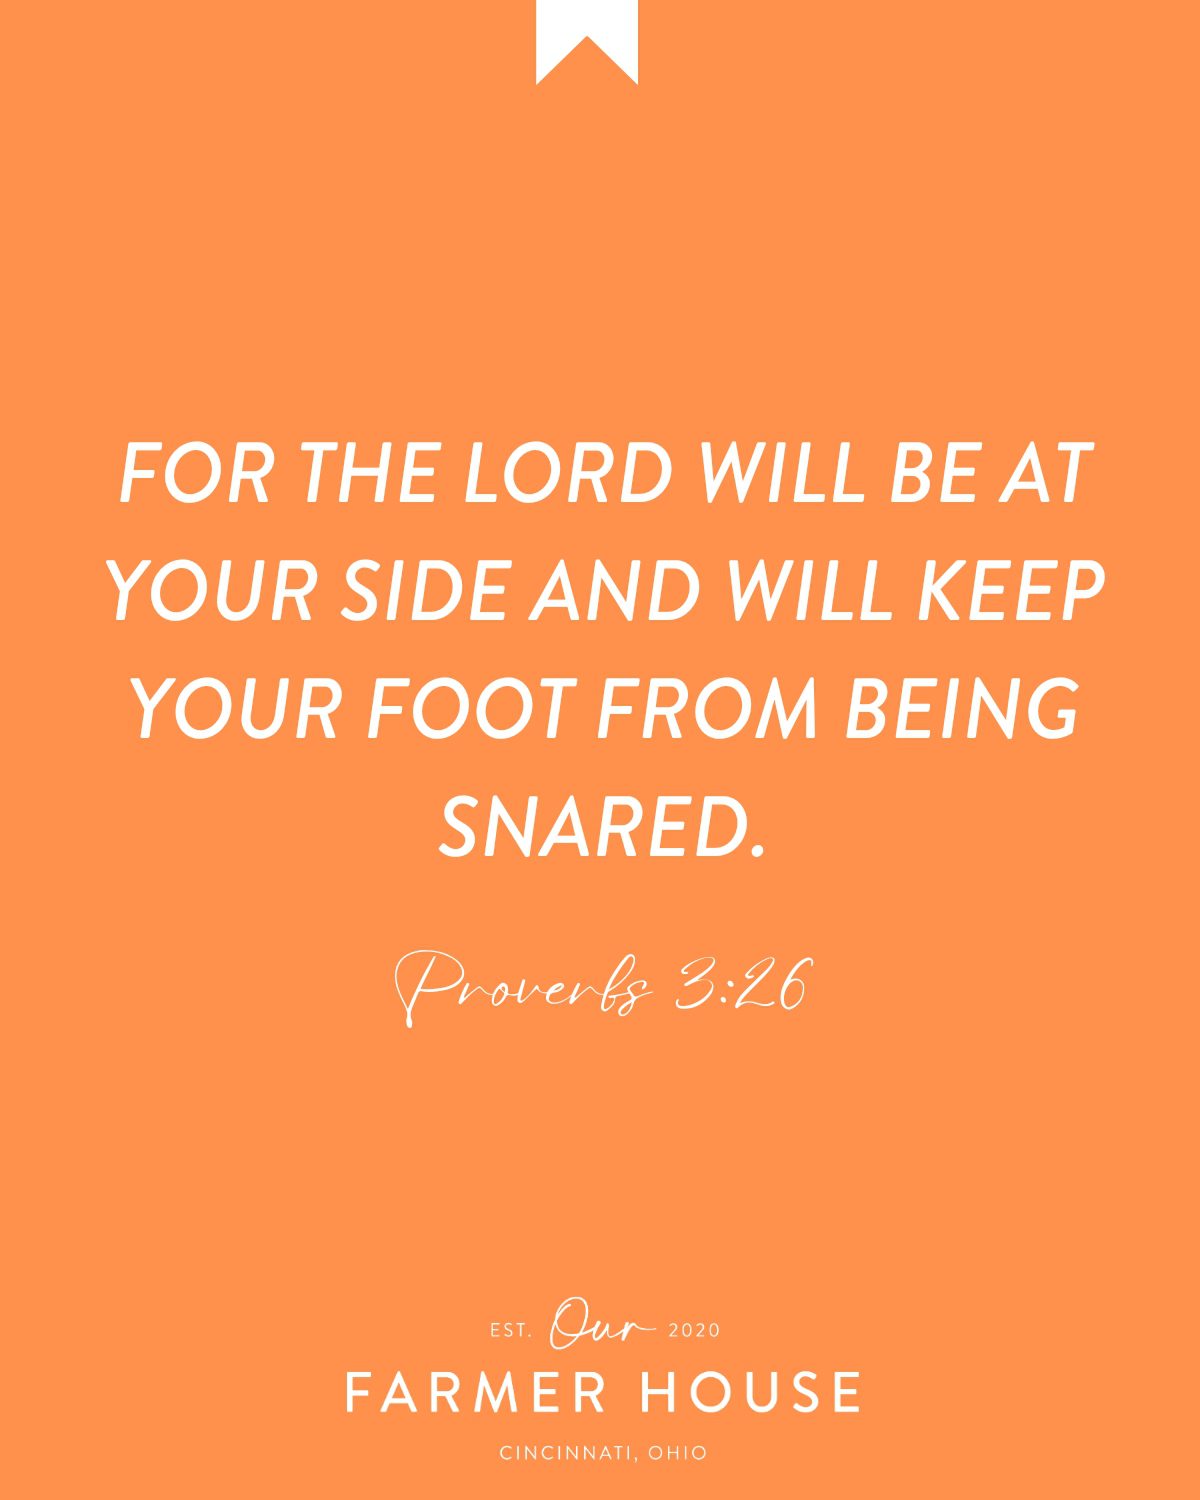 Proverbs 3:26